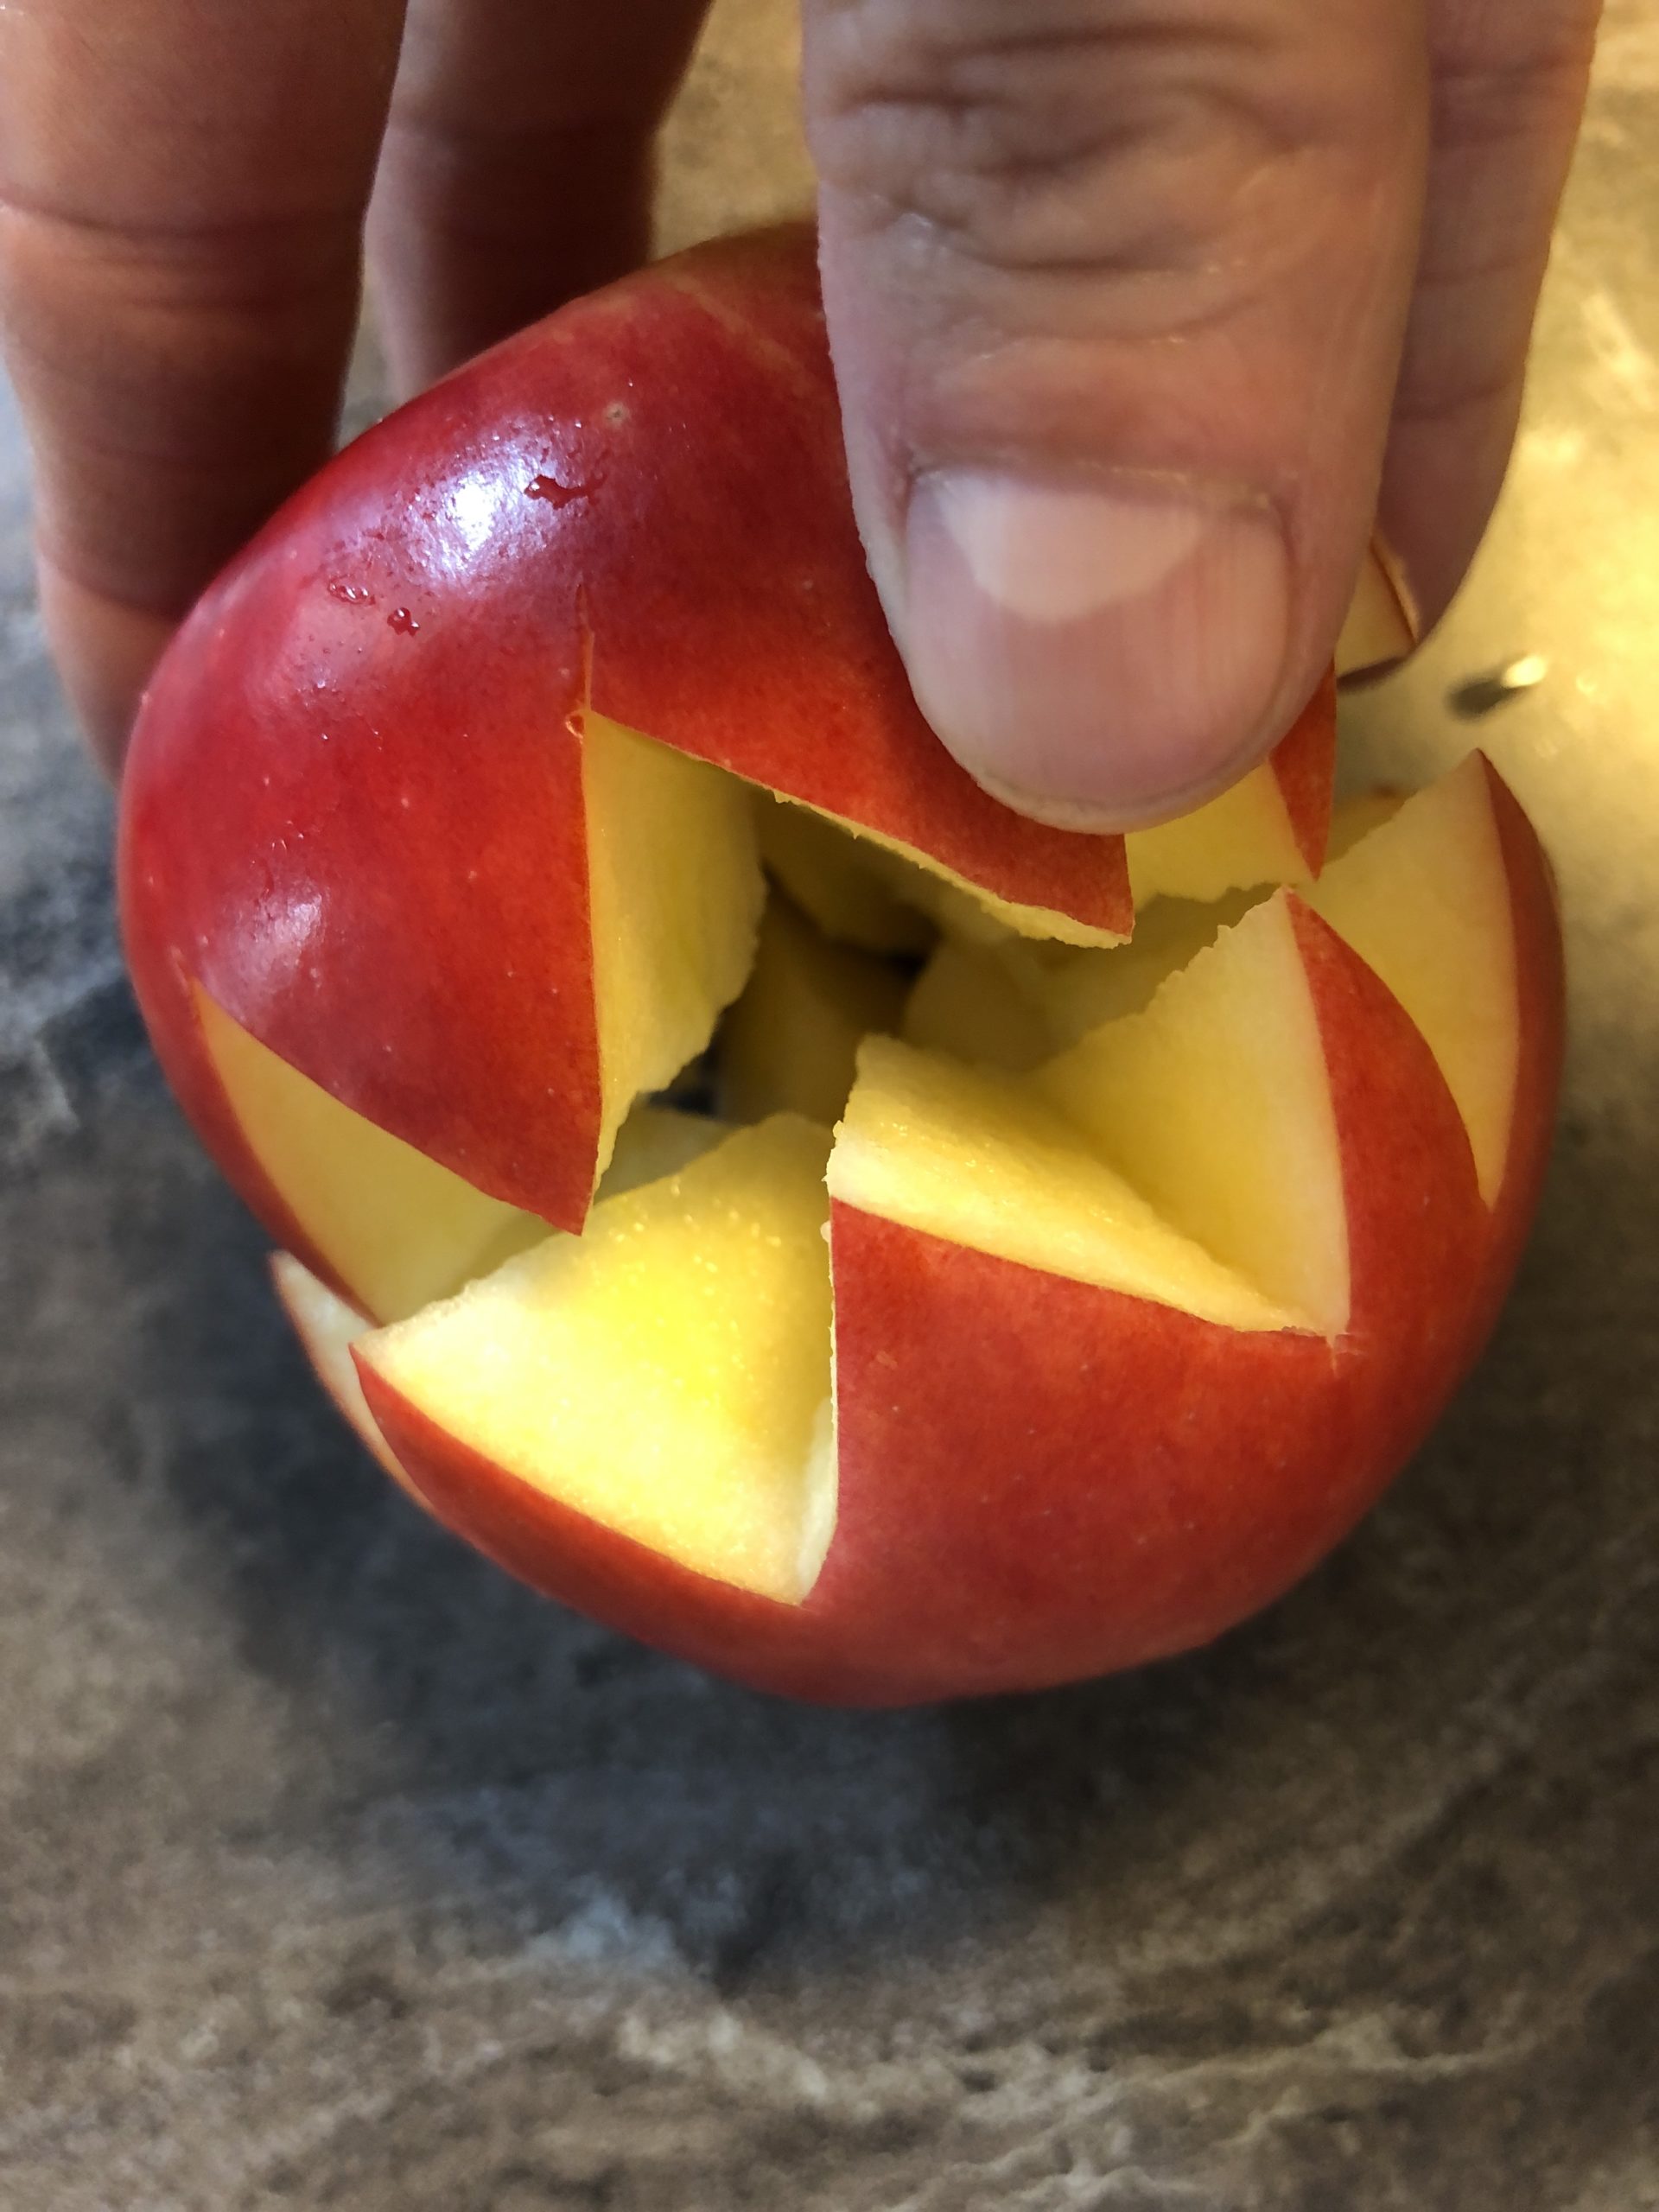 2. Bild zum Schritt 4 für die Kinder-Beschäftigung: 'Den geschnittenen Apfel vorsichtig auseinander drehen.'